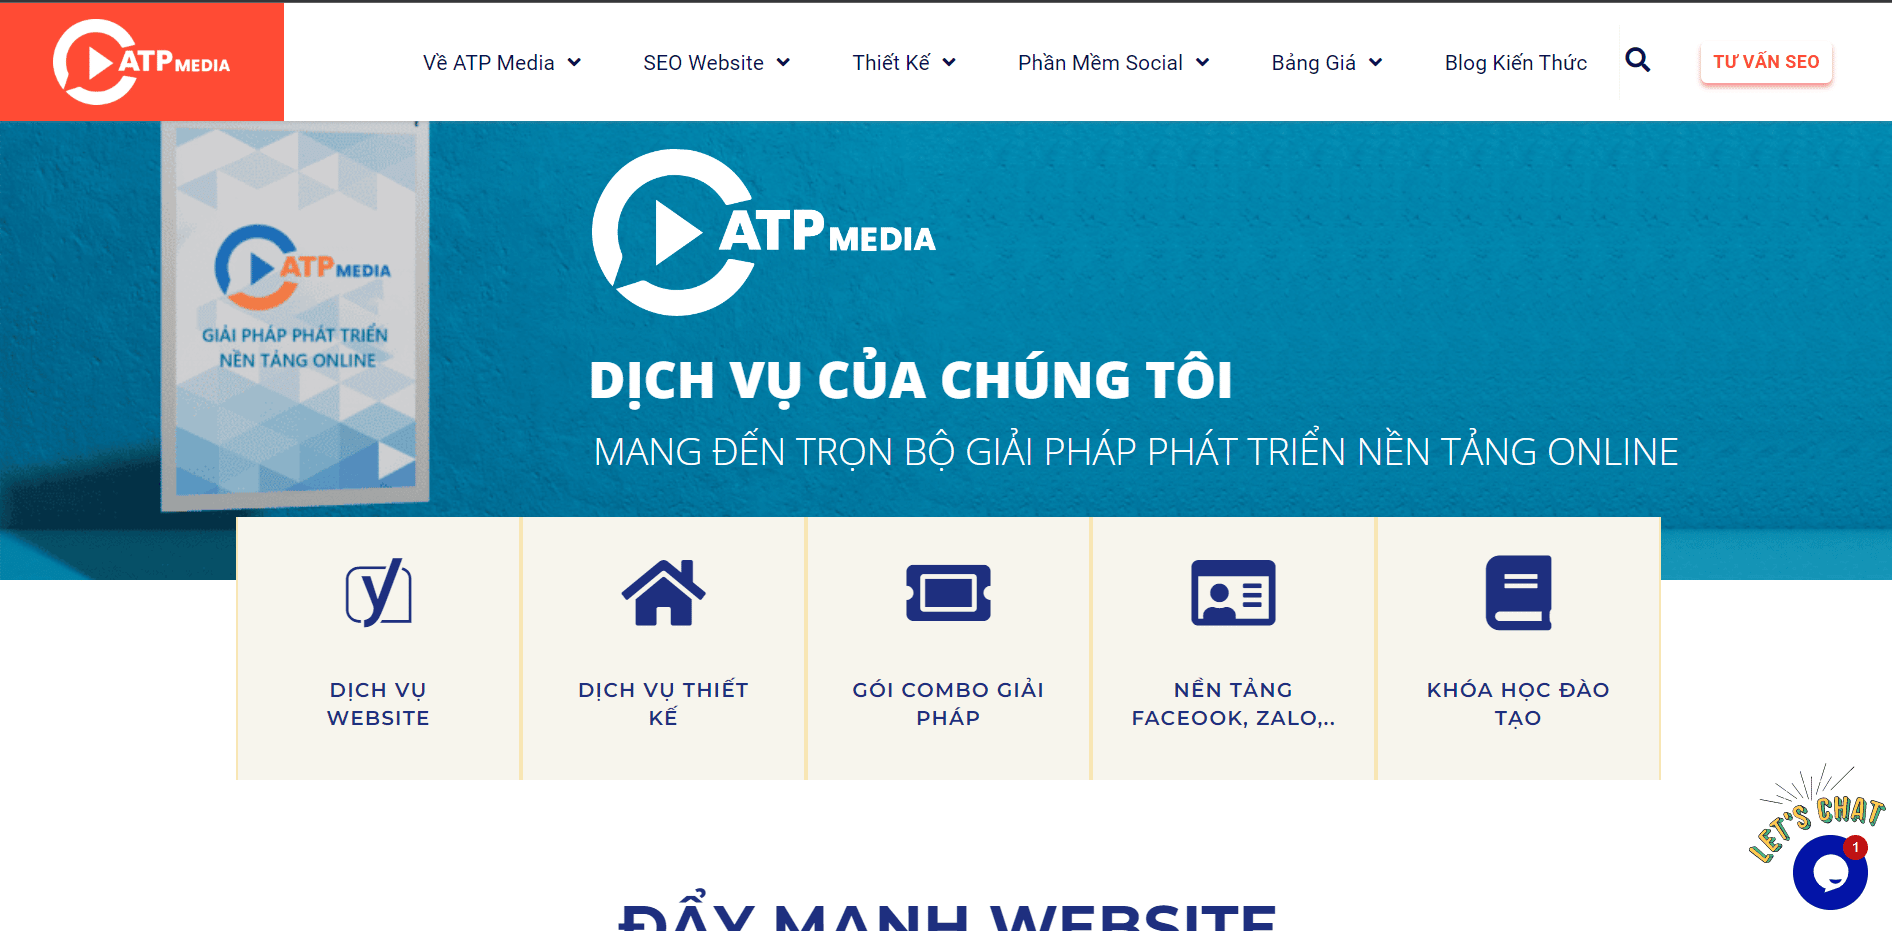 Dịch vụ lên tích xanh Facebook tại ATP Media